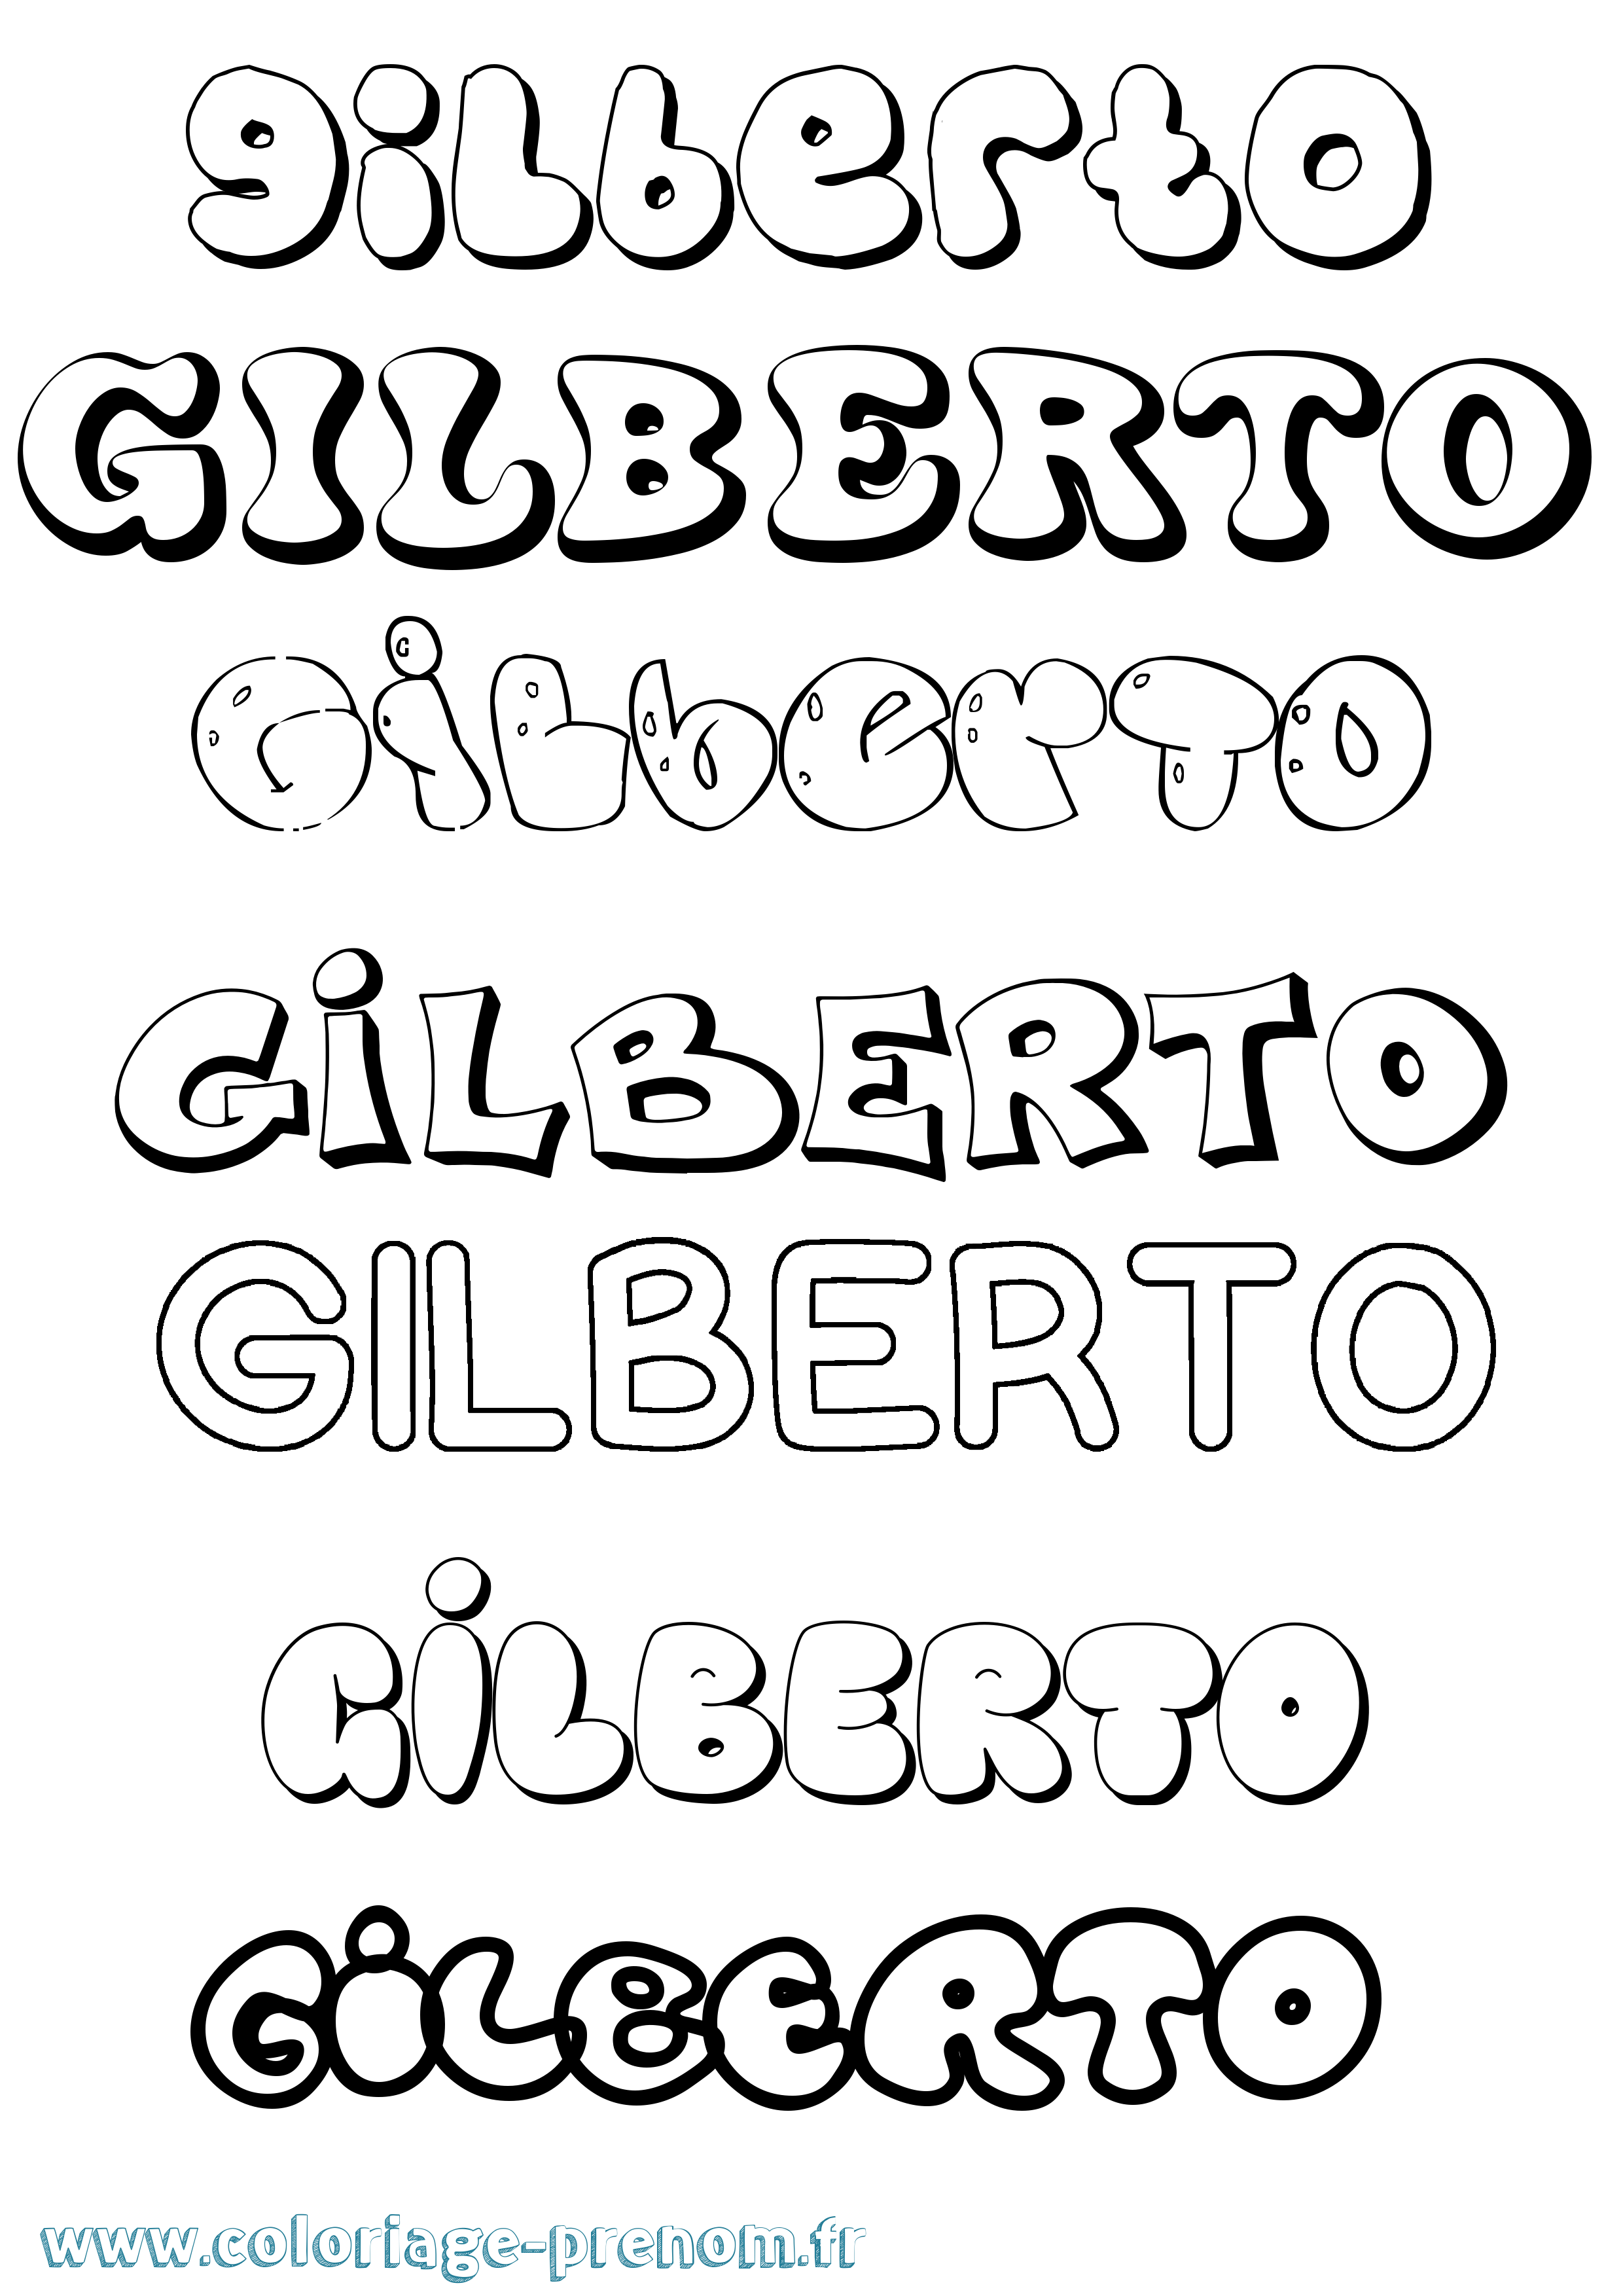 Coloriage prénom Gilberto Bubble